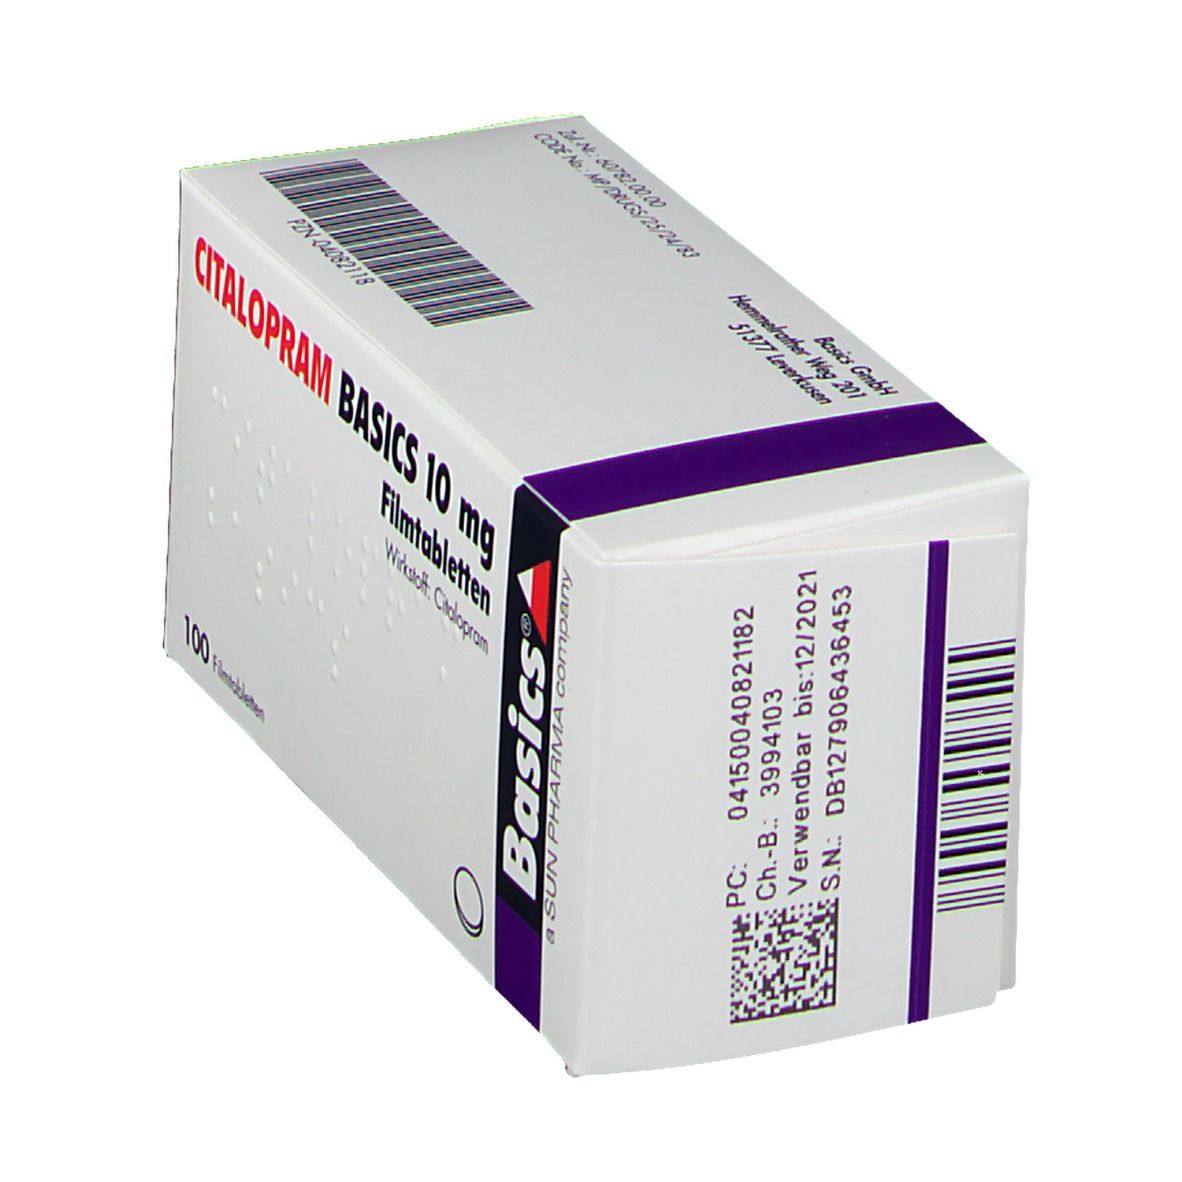 CITALOPRAM BASICS 10 mg